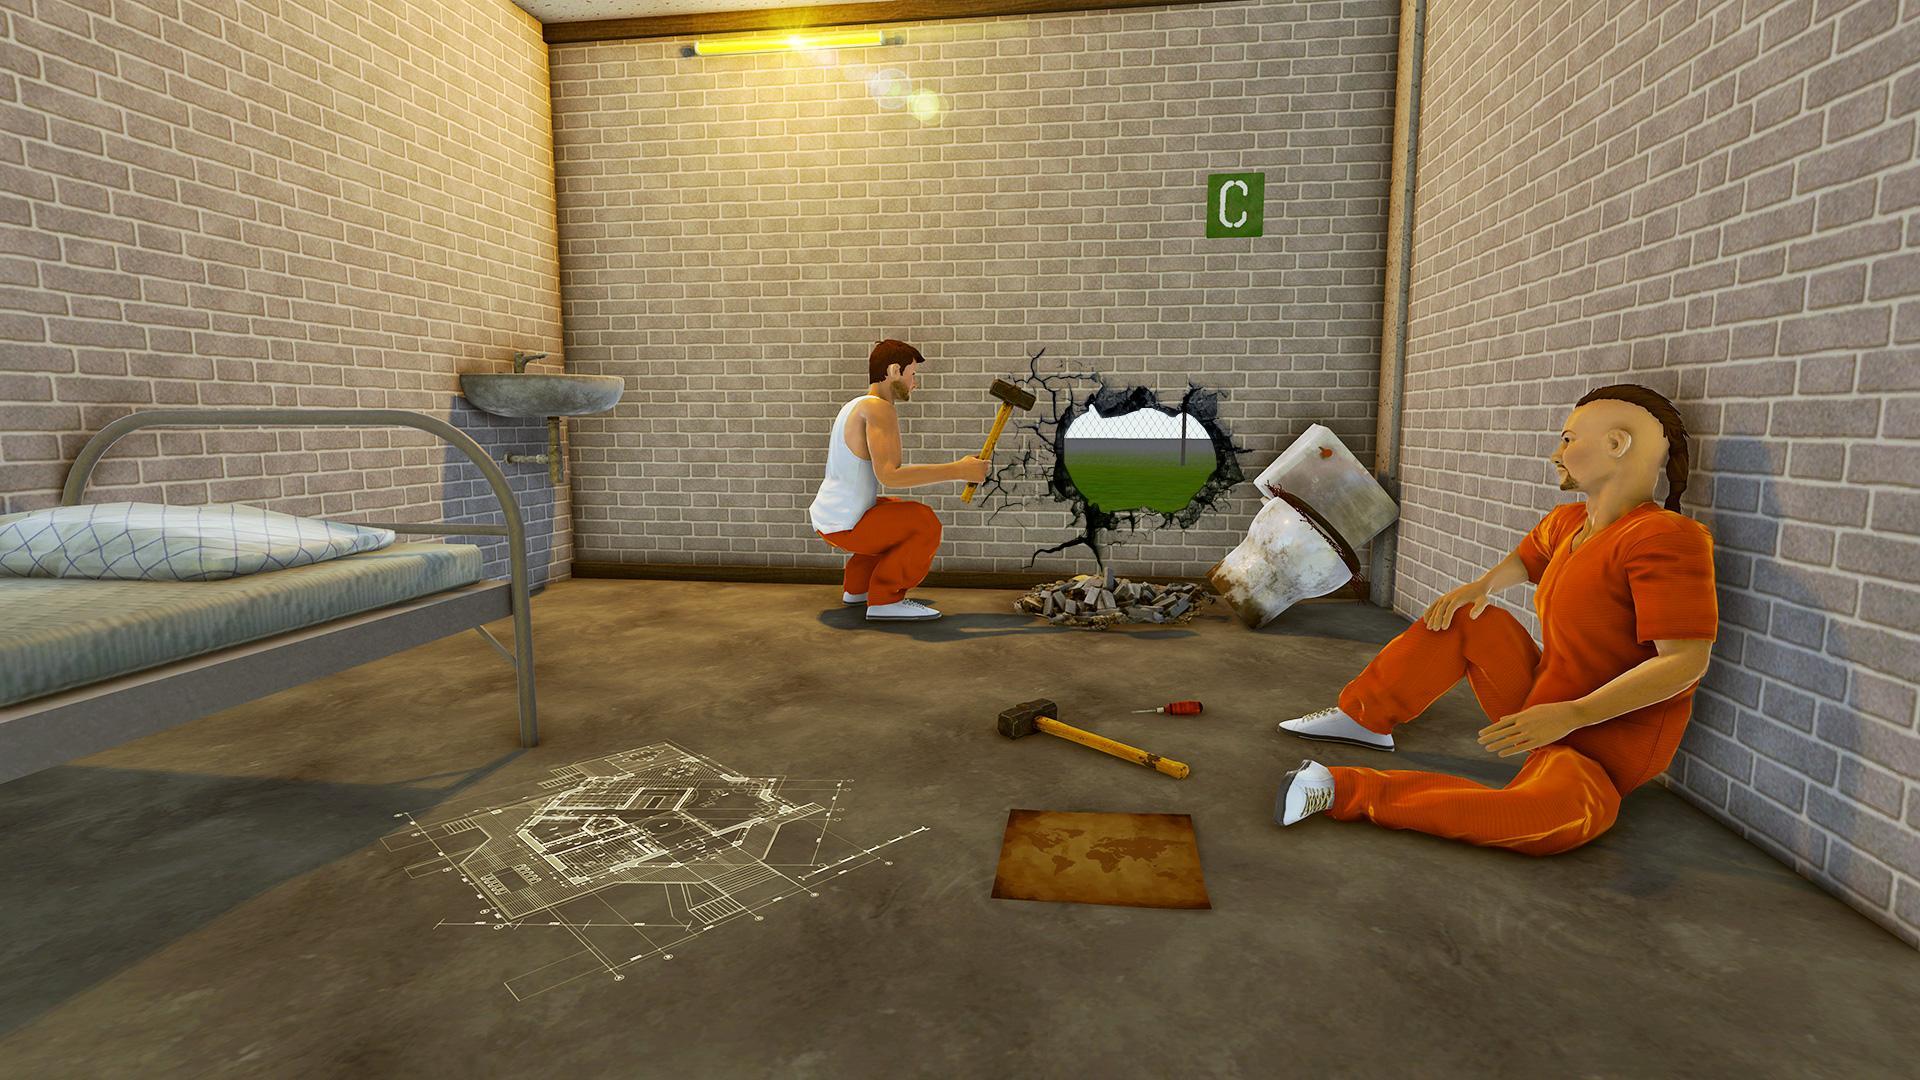 Grand Us Police Prison Escape Game For Android Apk Download - roblox escape room prison break new version